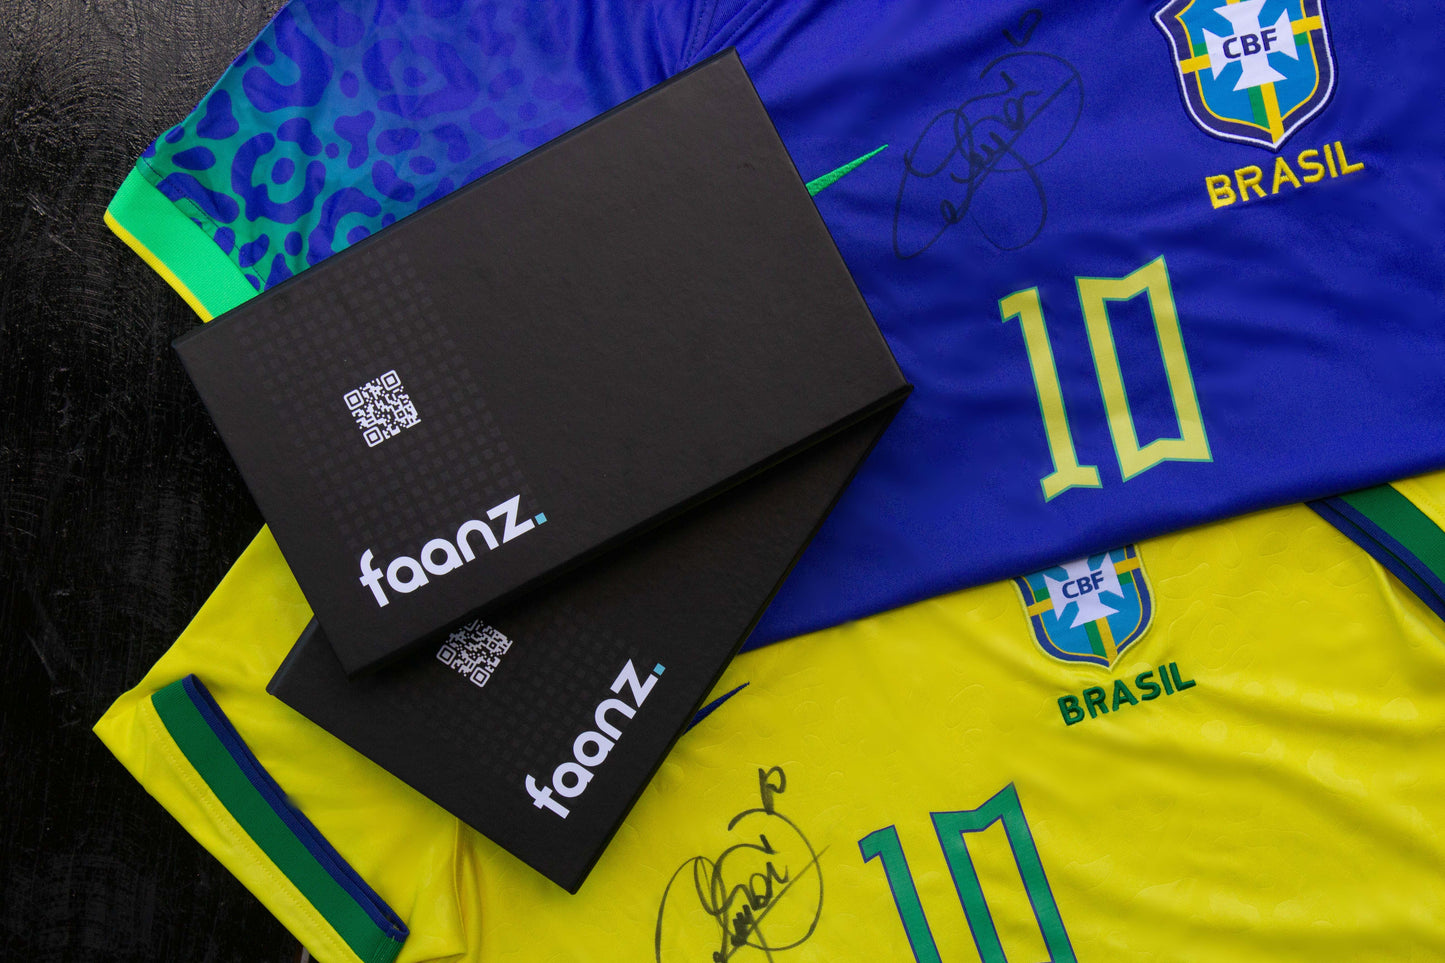 Camisa Amarela Exclusiva da Copa do Mundo Qatar 2022. Assinado por Neymar